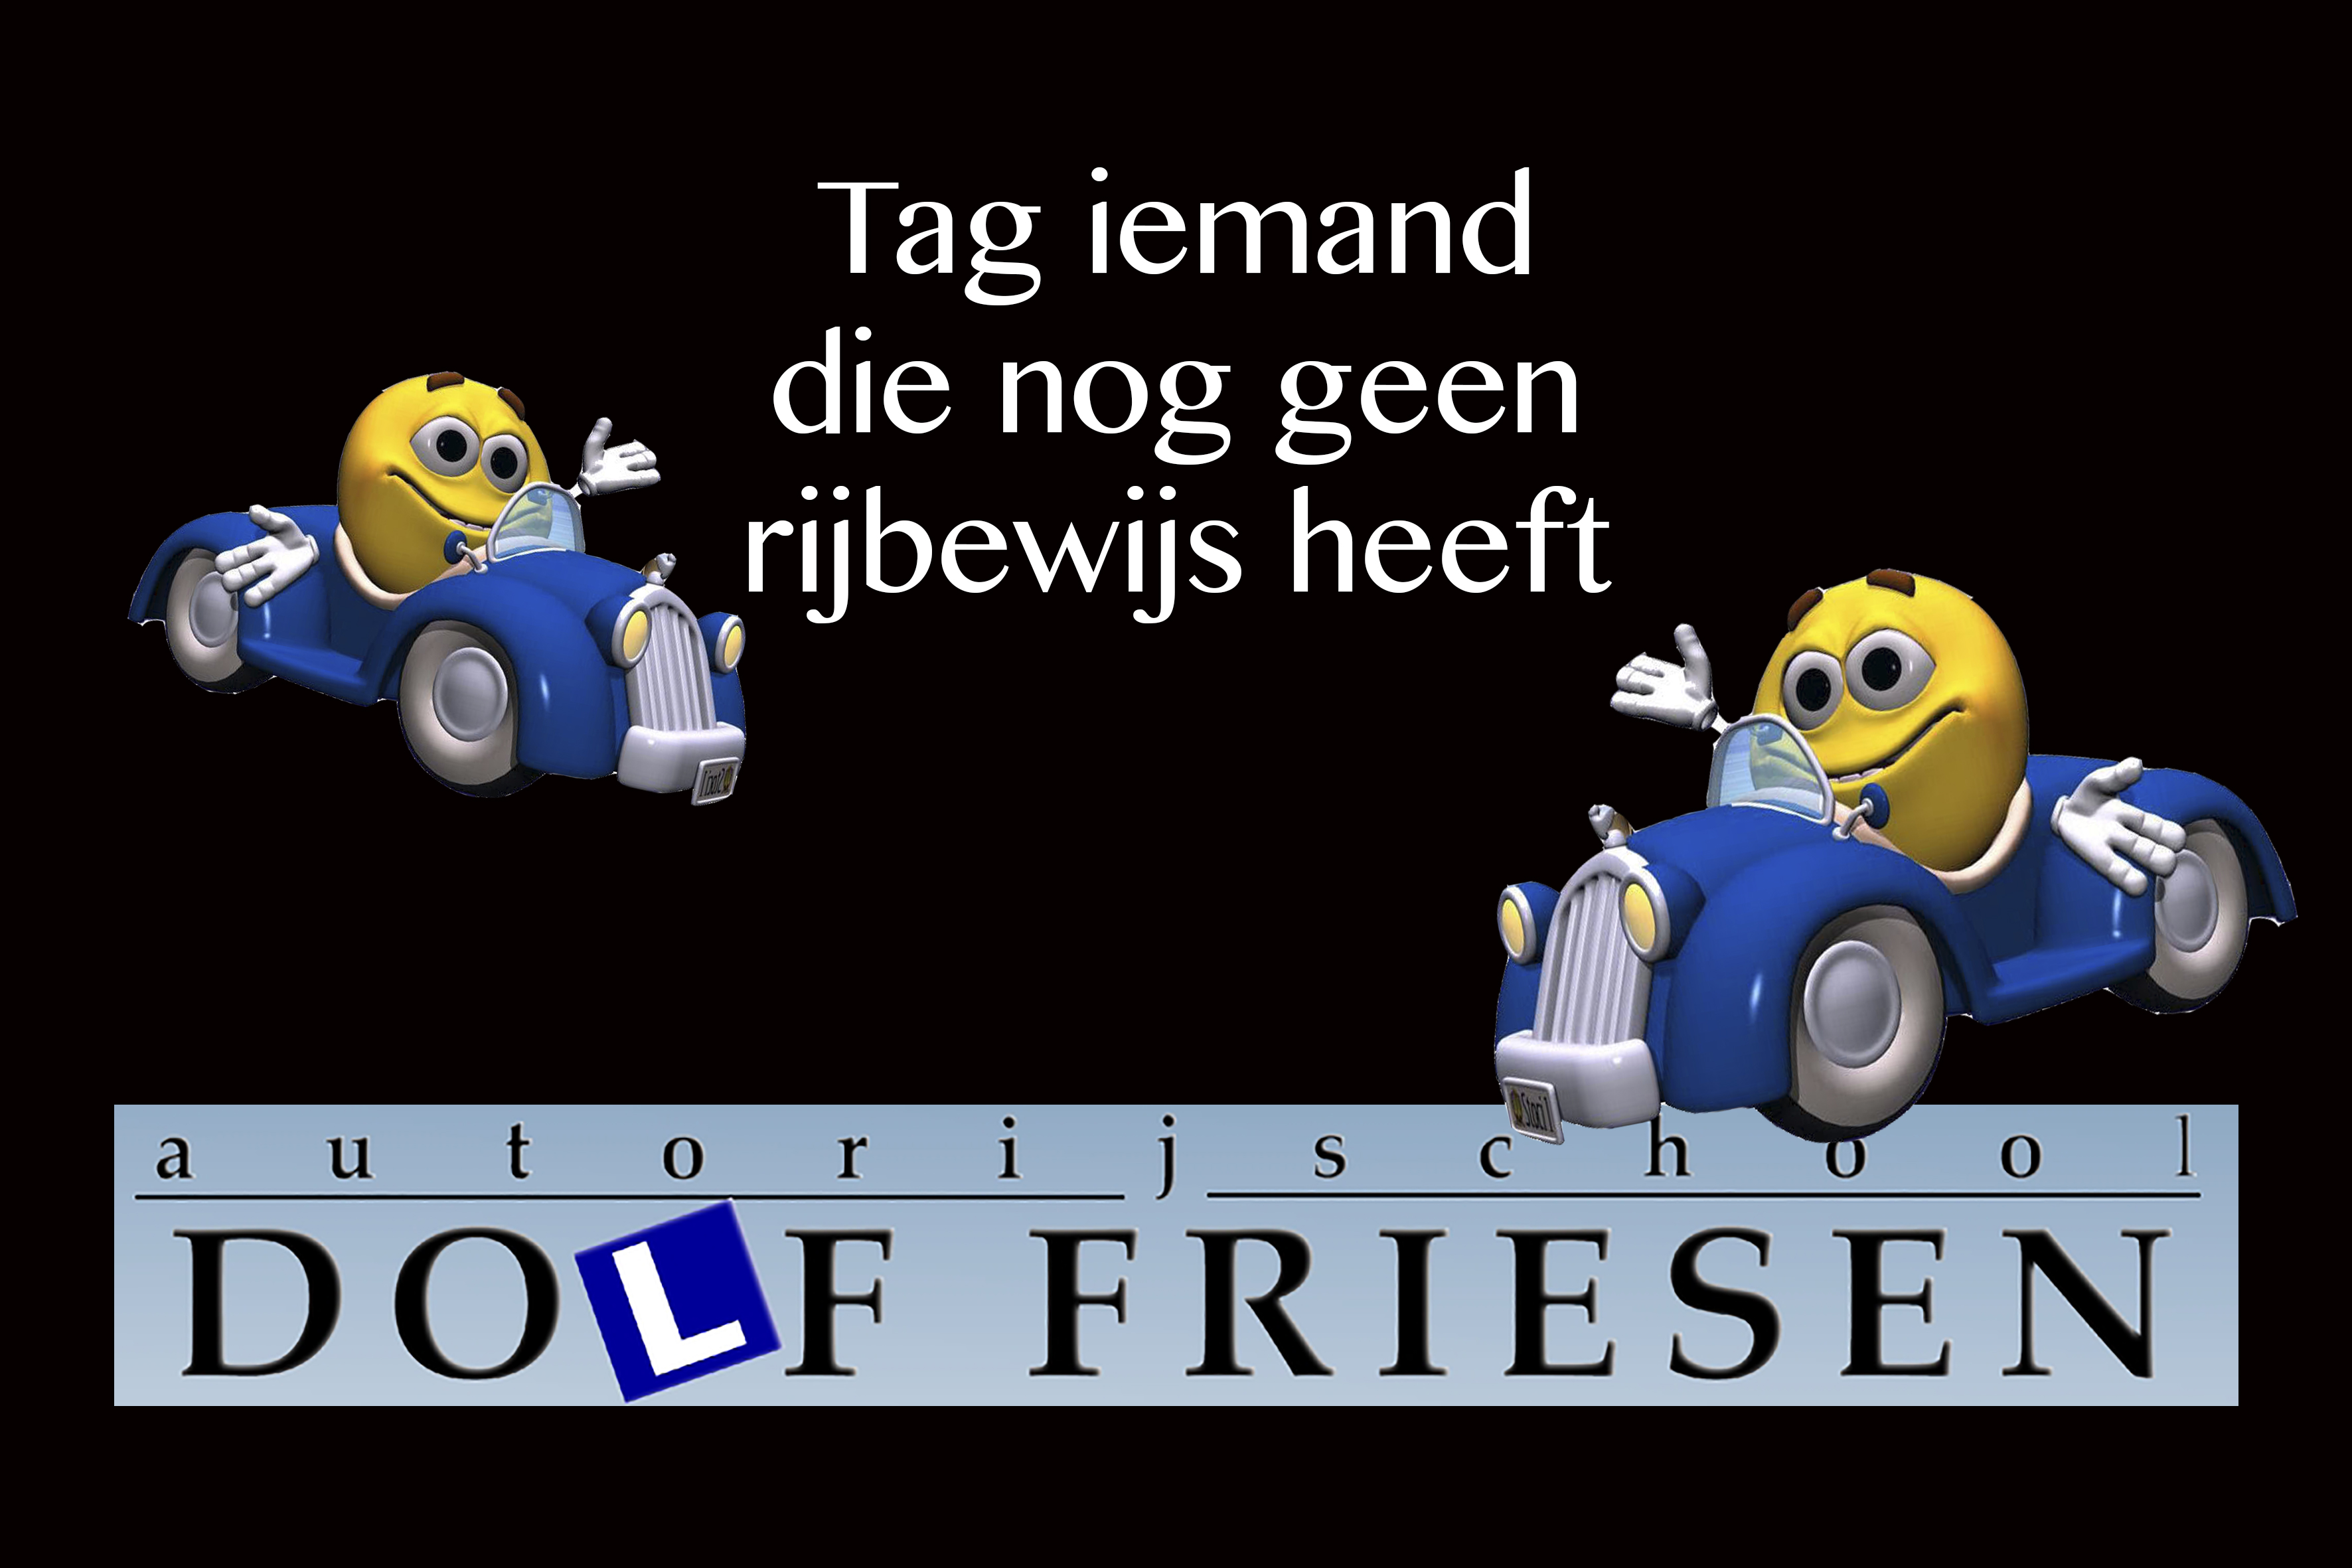 Dolf Friesen rijbewijs